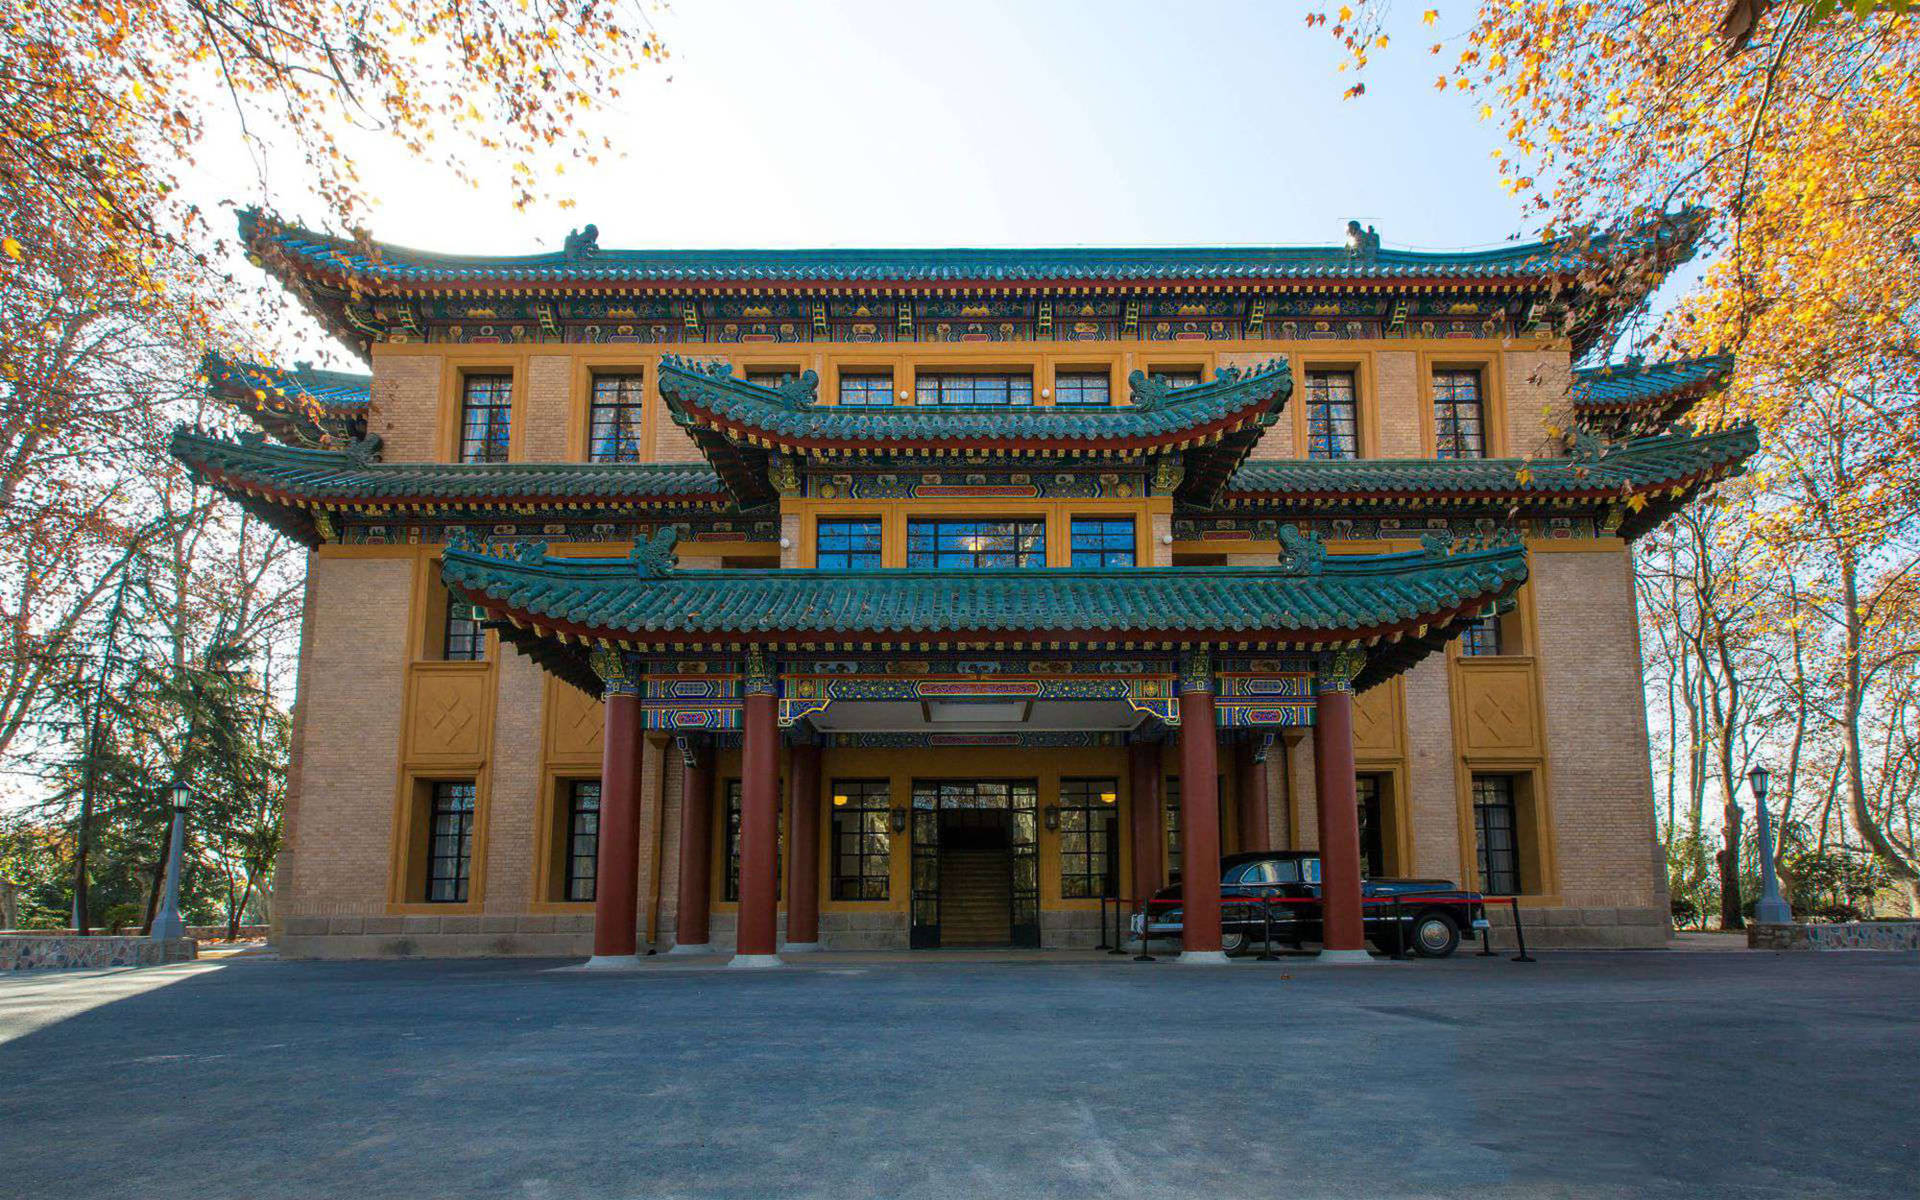 Nanjing Meiling Palace